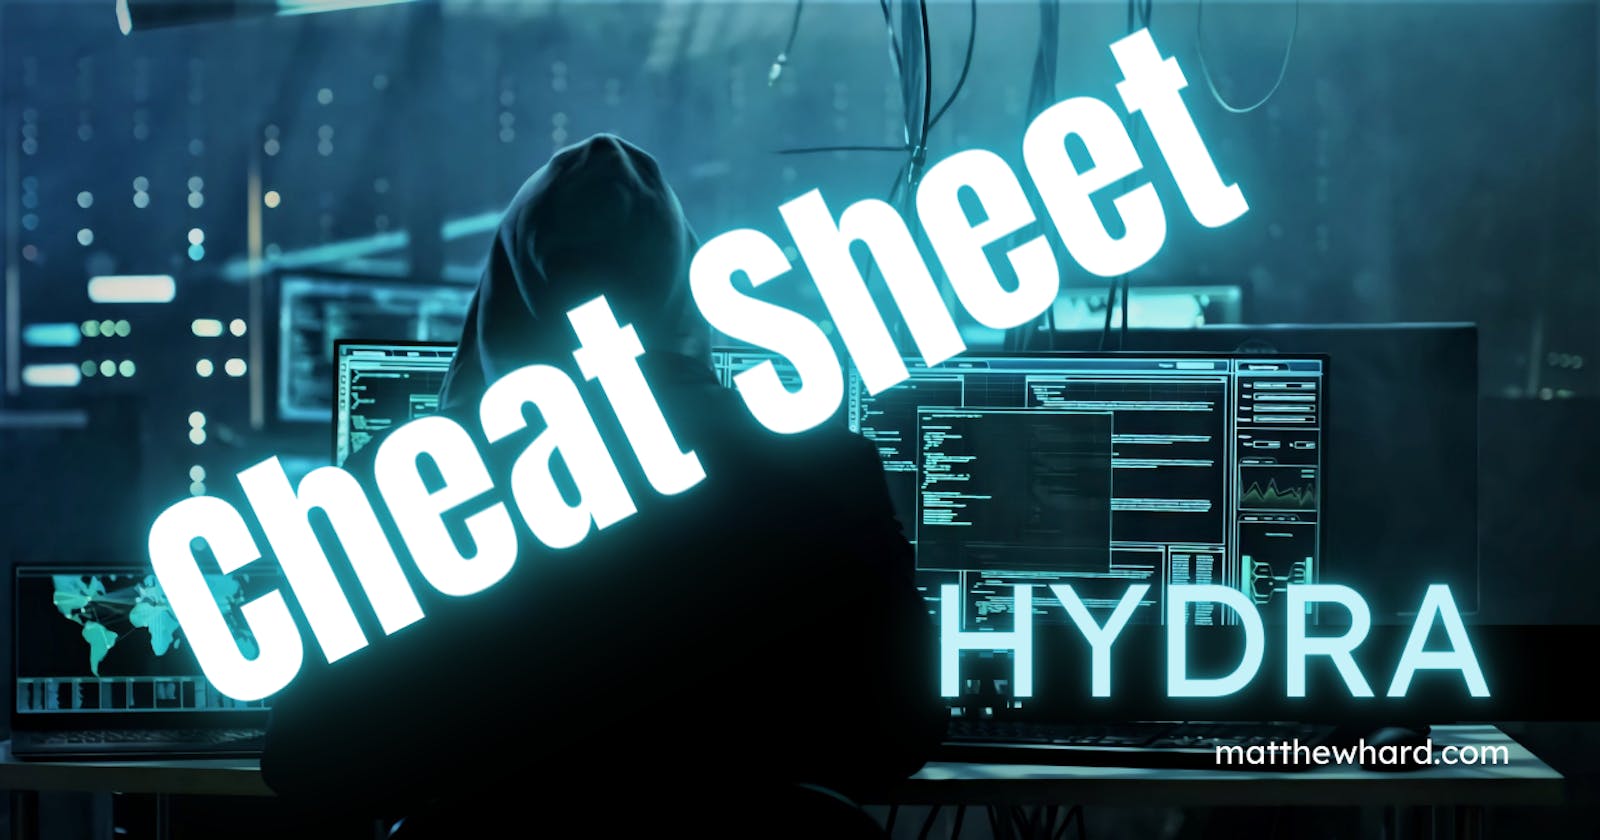 Hydra Cheat Sheet